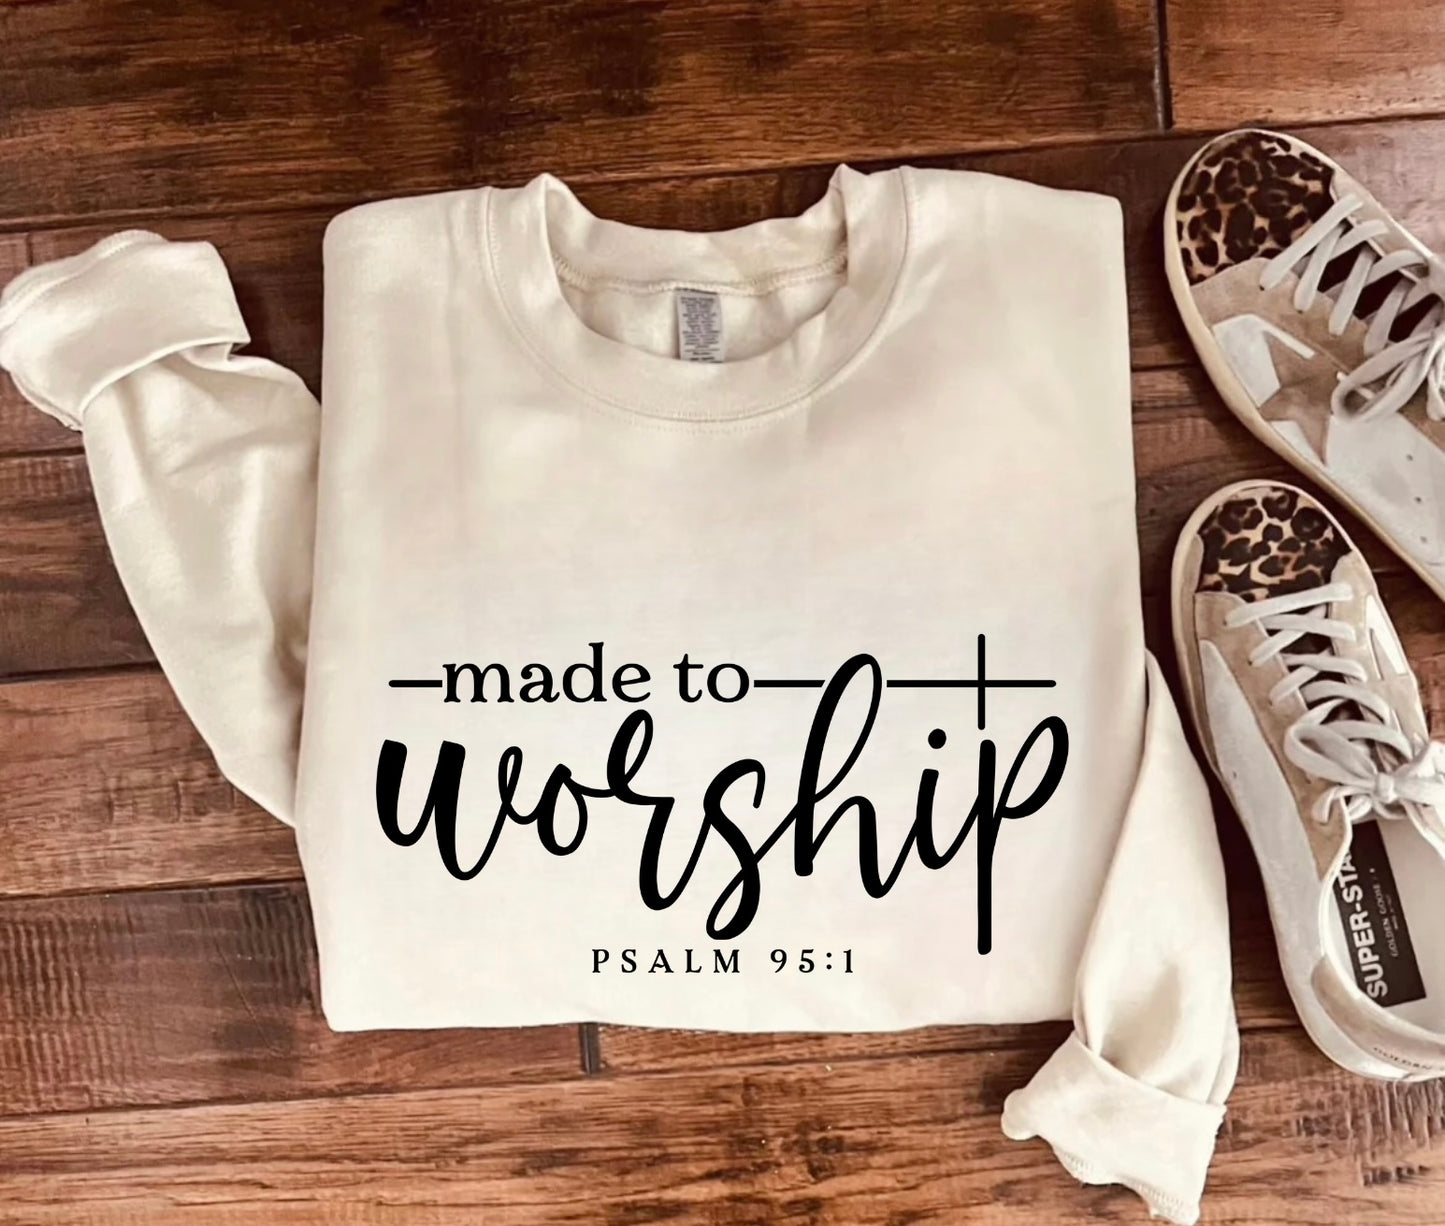 Made to Worship sweatshirt preorder